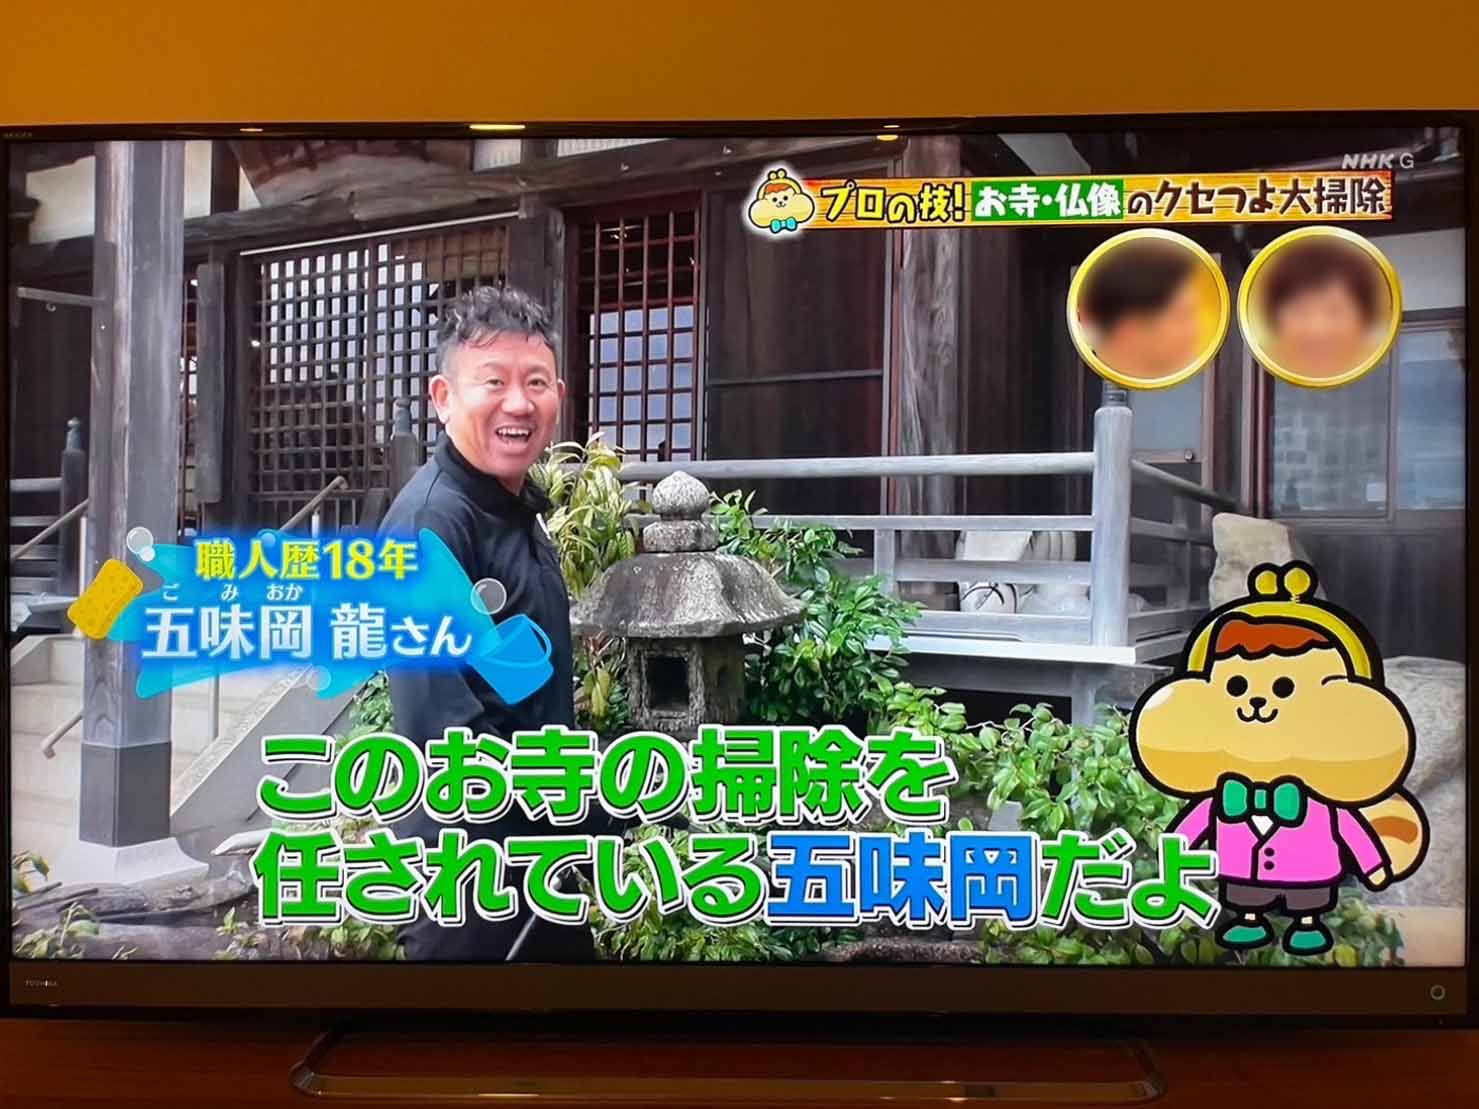 NHK「有吉のお金発見 突撃!カネオくん」でジーホワイトが紹介されました。